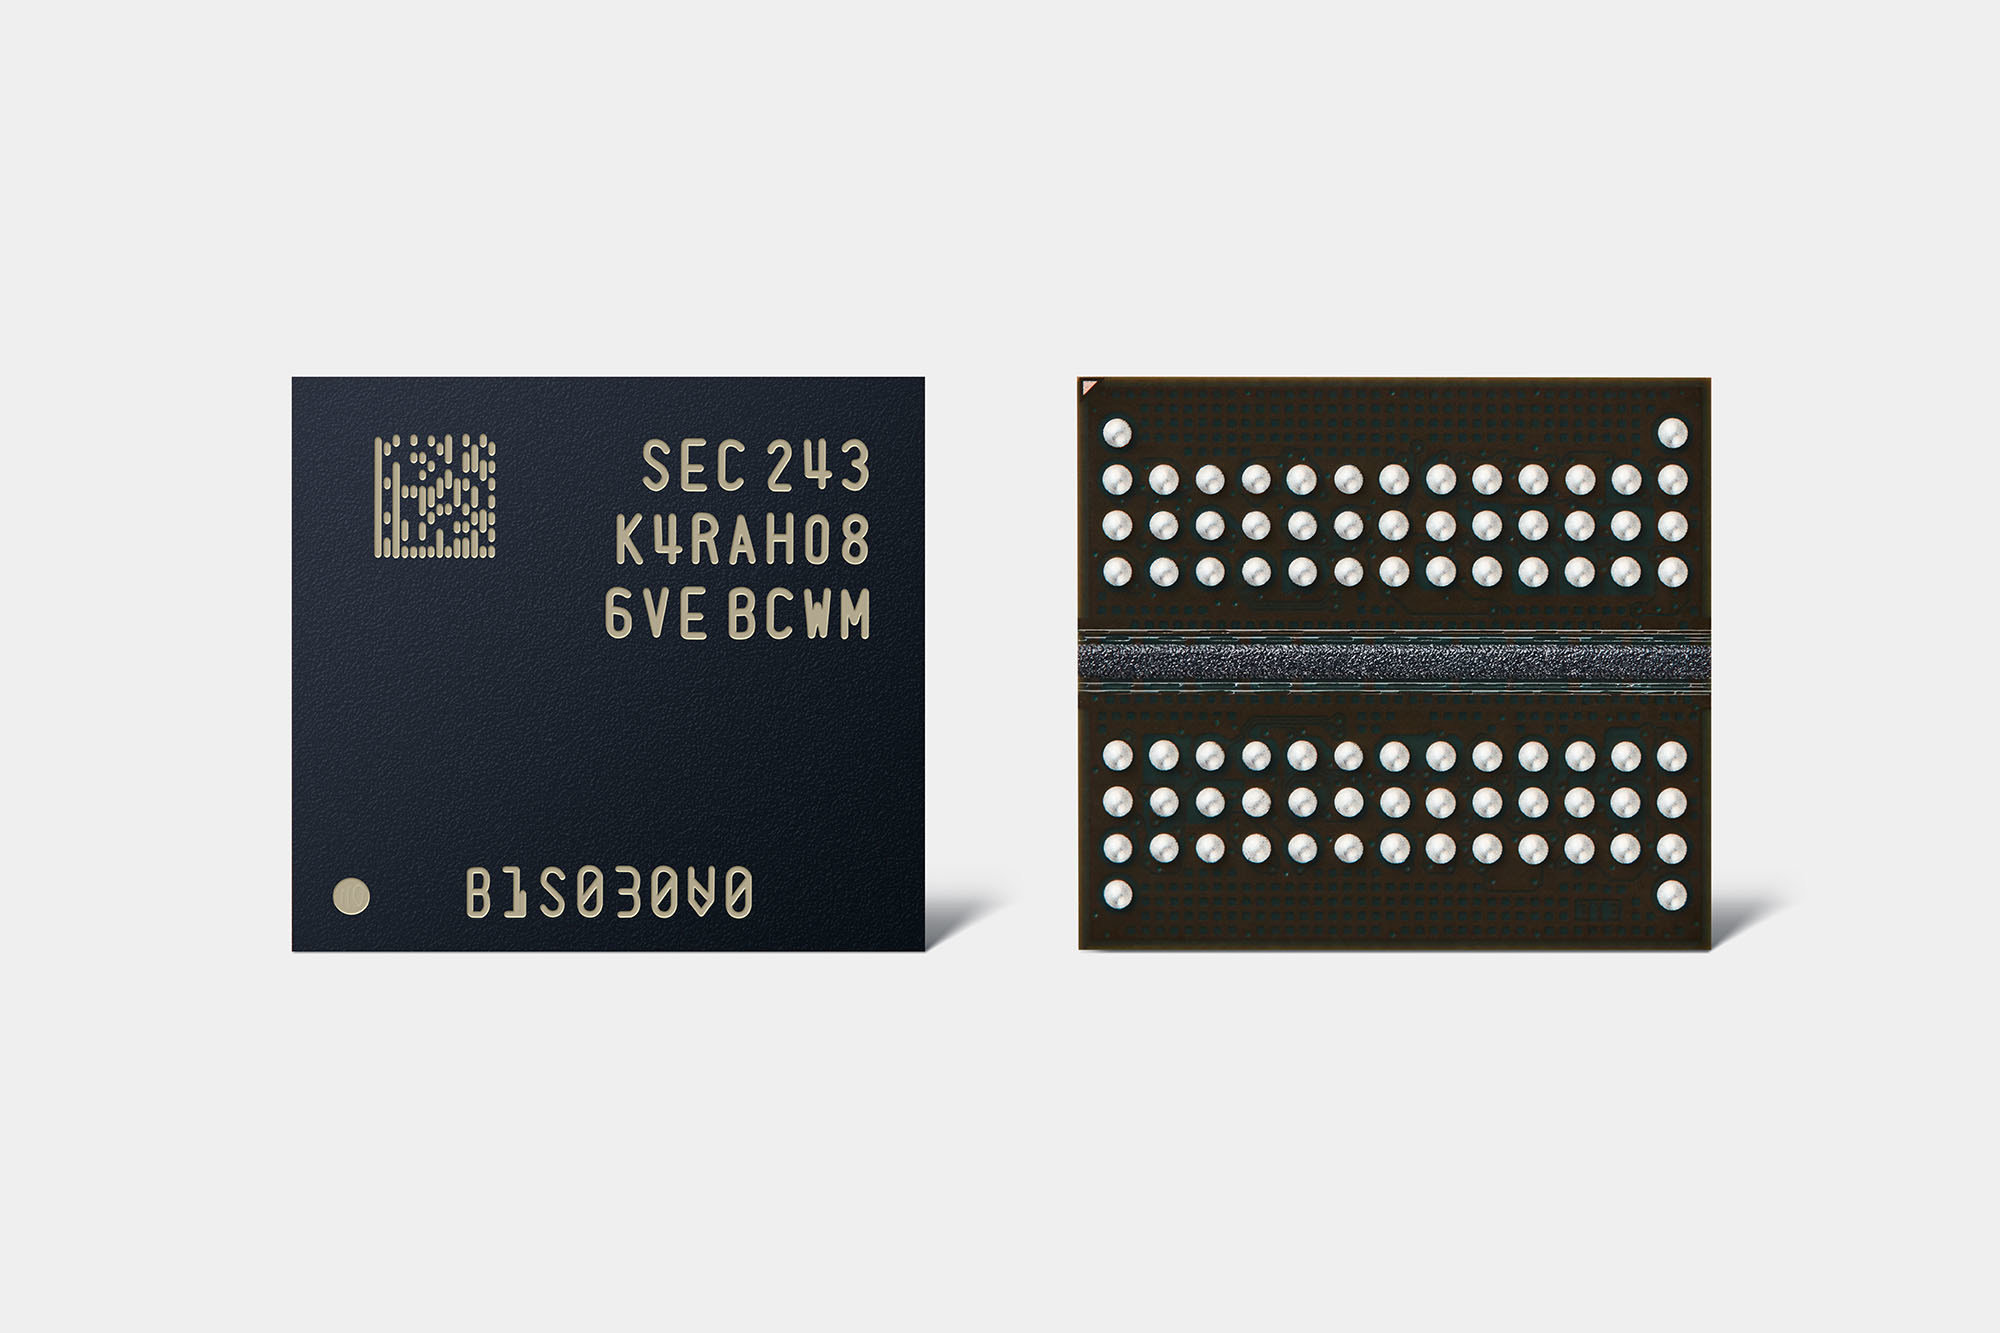 三星电子首款12纳米级DDR5 DRAM开发成功